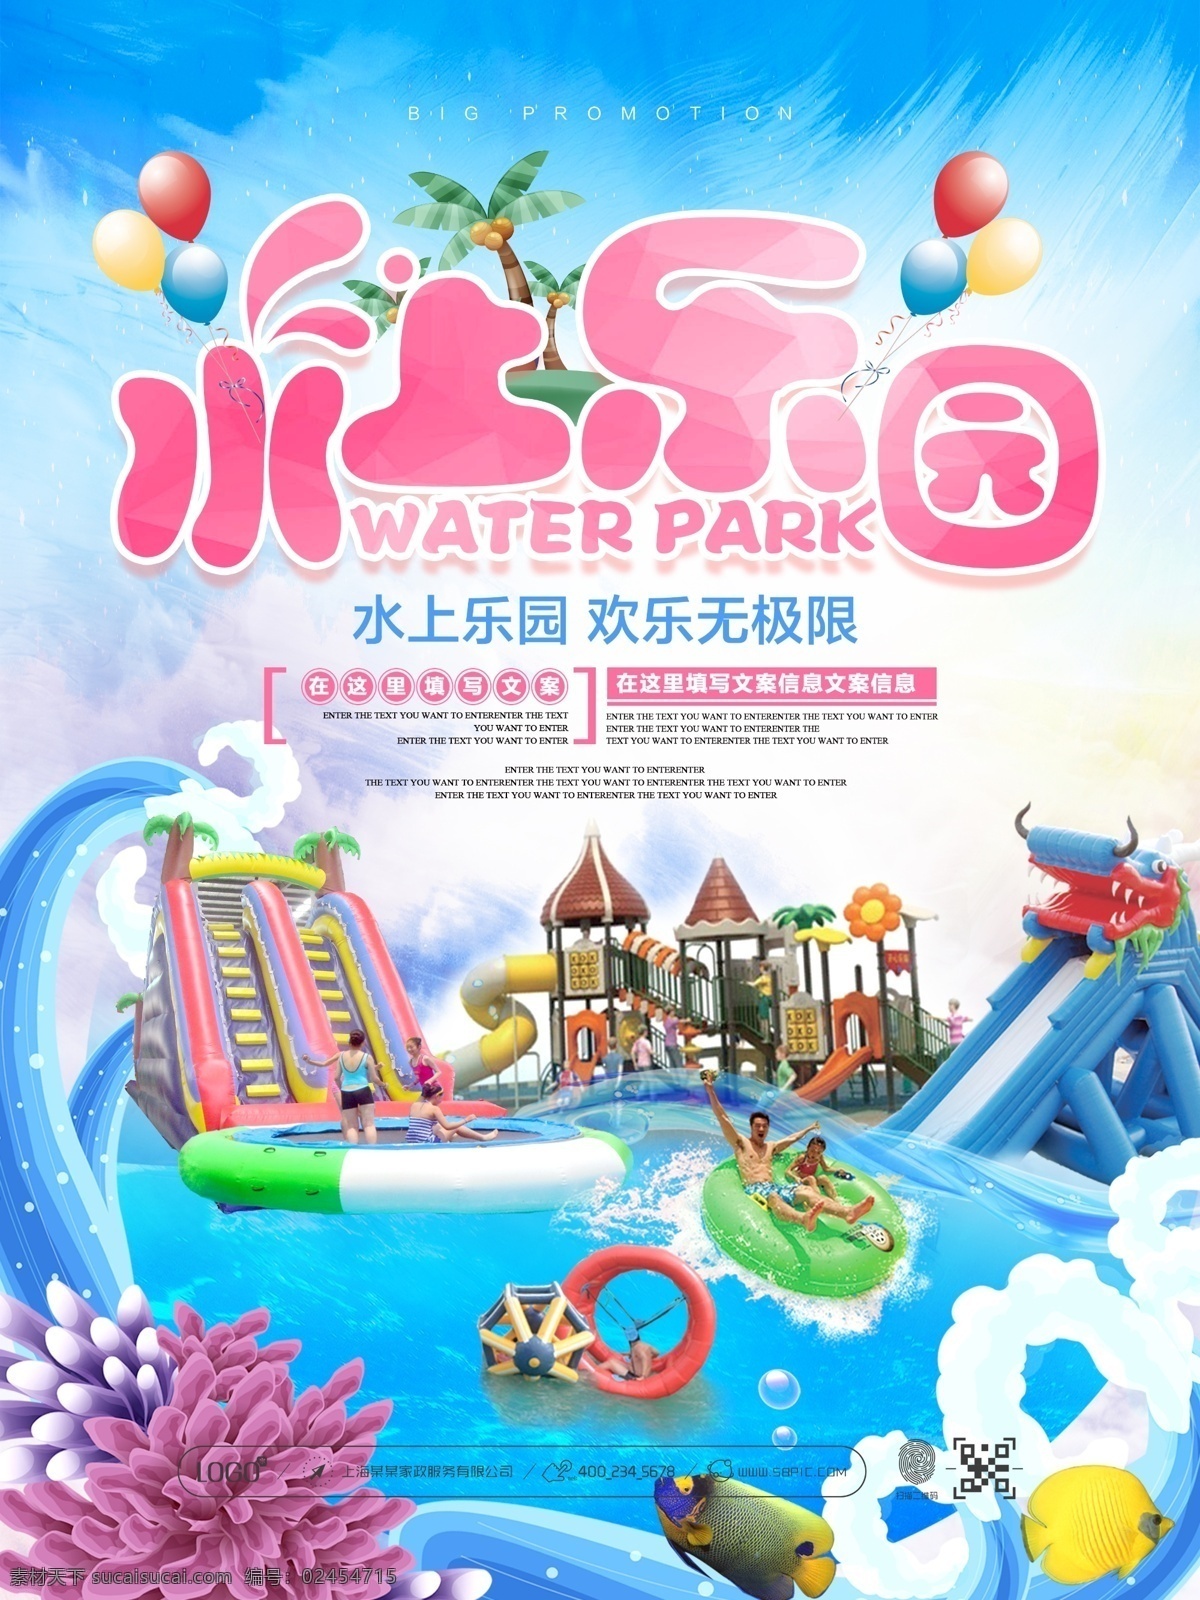 夏季 清新 蓝色 水上乐园 宣传 促销 海报 夏日 水上公园 儿童乐园 儿童水上乐园 水上游乐园 水上漂流 水上活动 水上娱乐 水上运动 游乐园